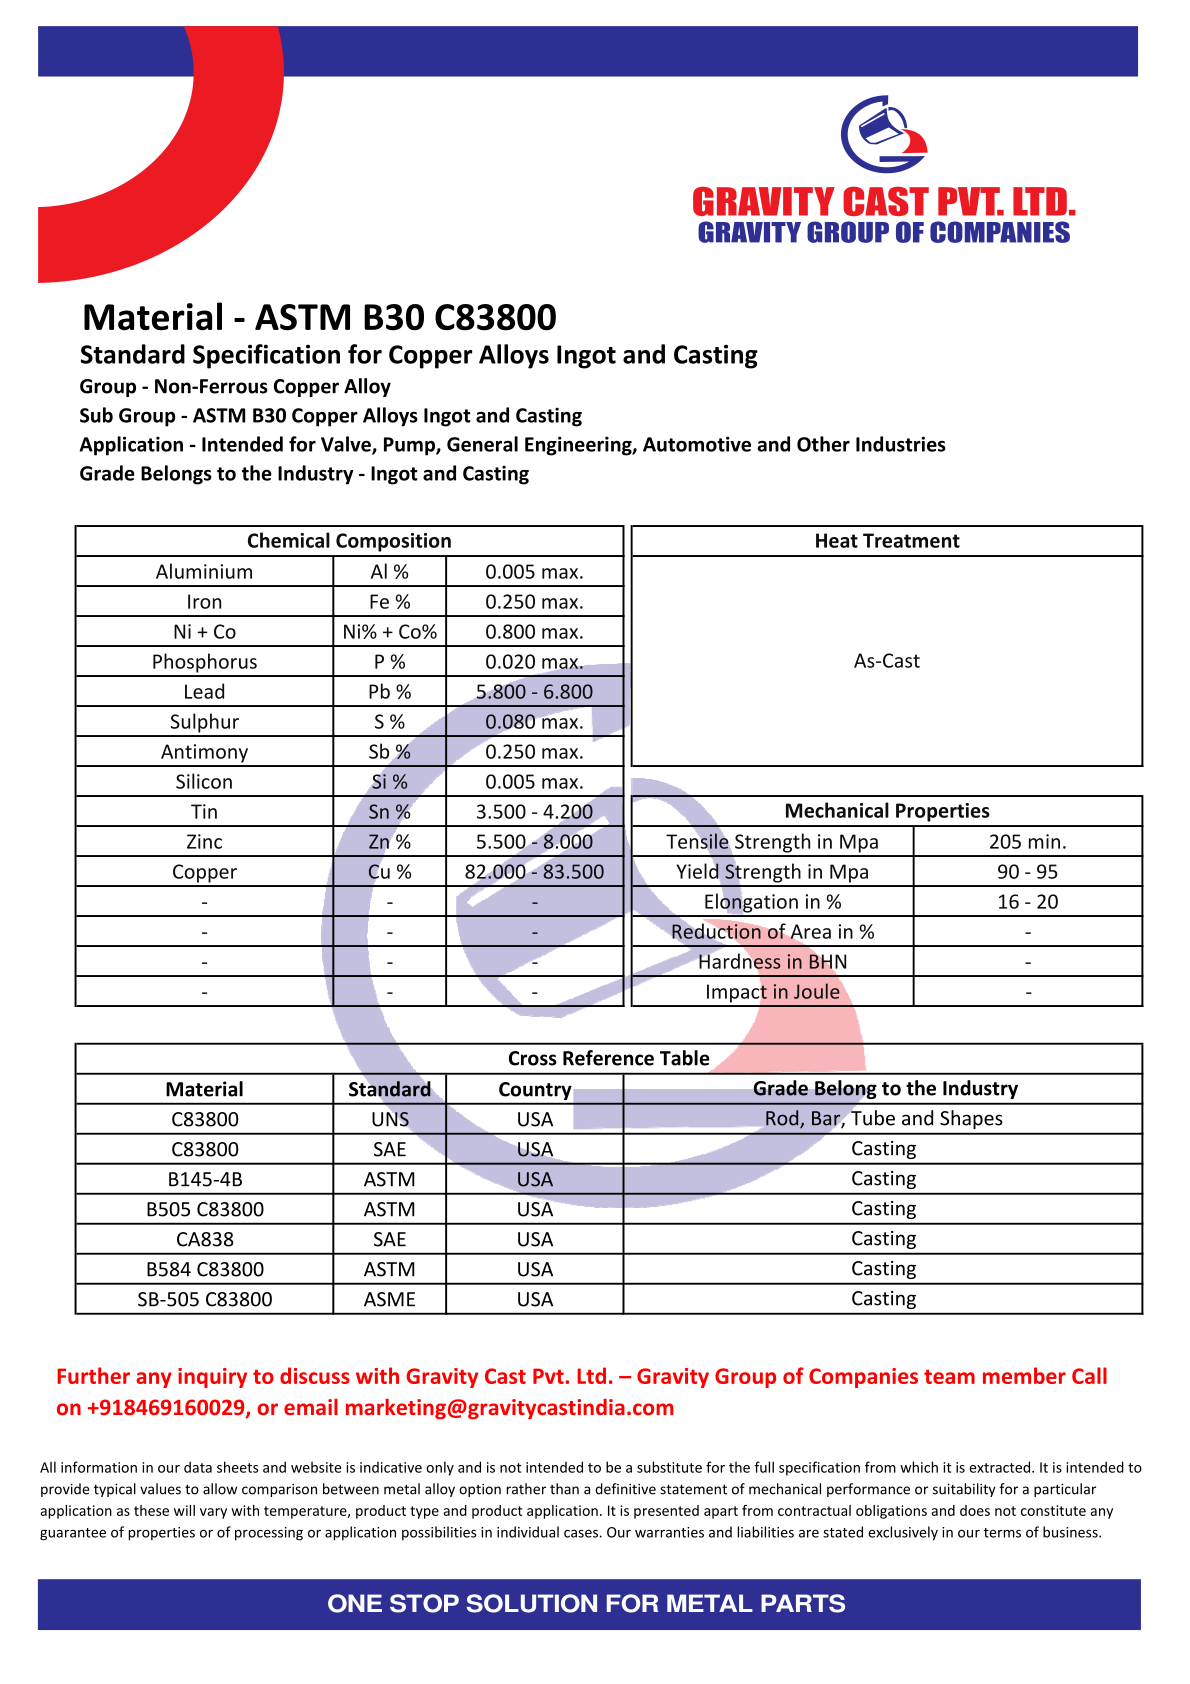 ASTM B30 C83800.pdf